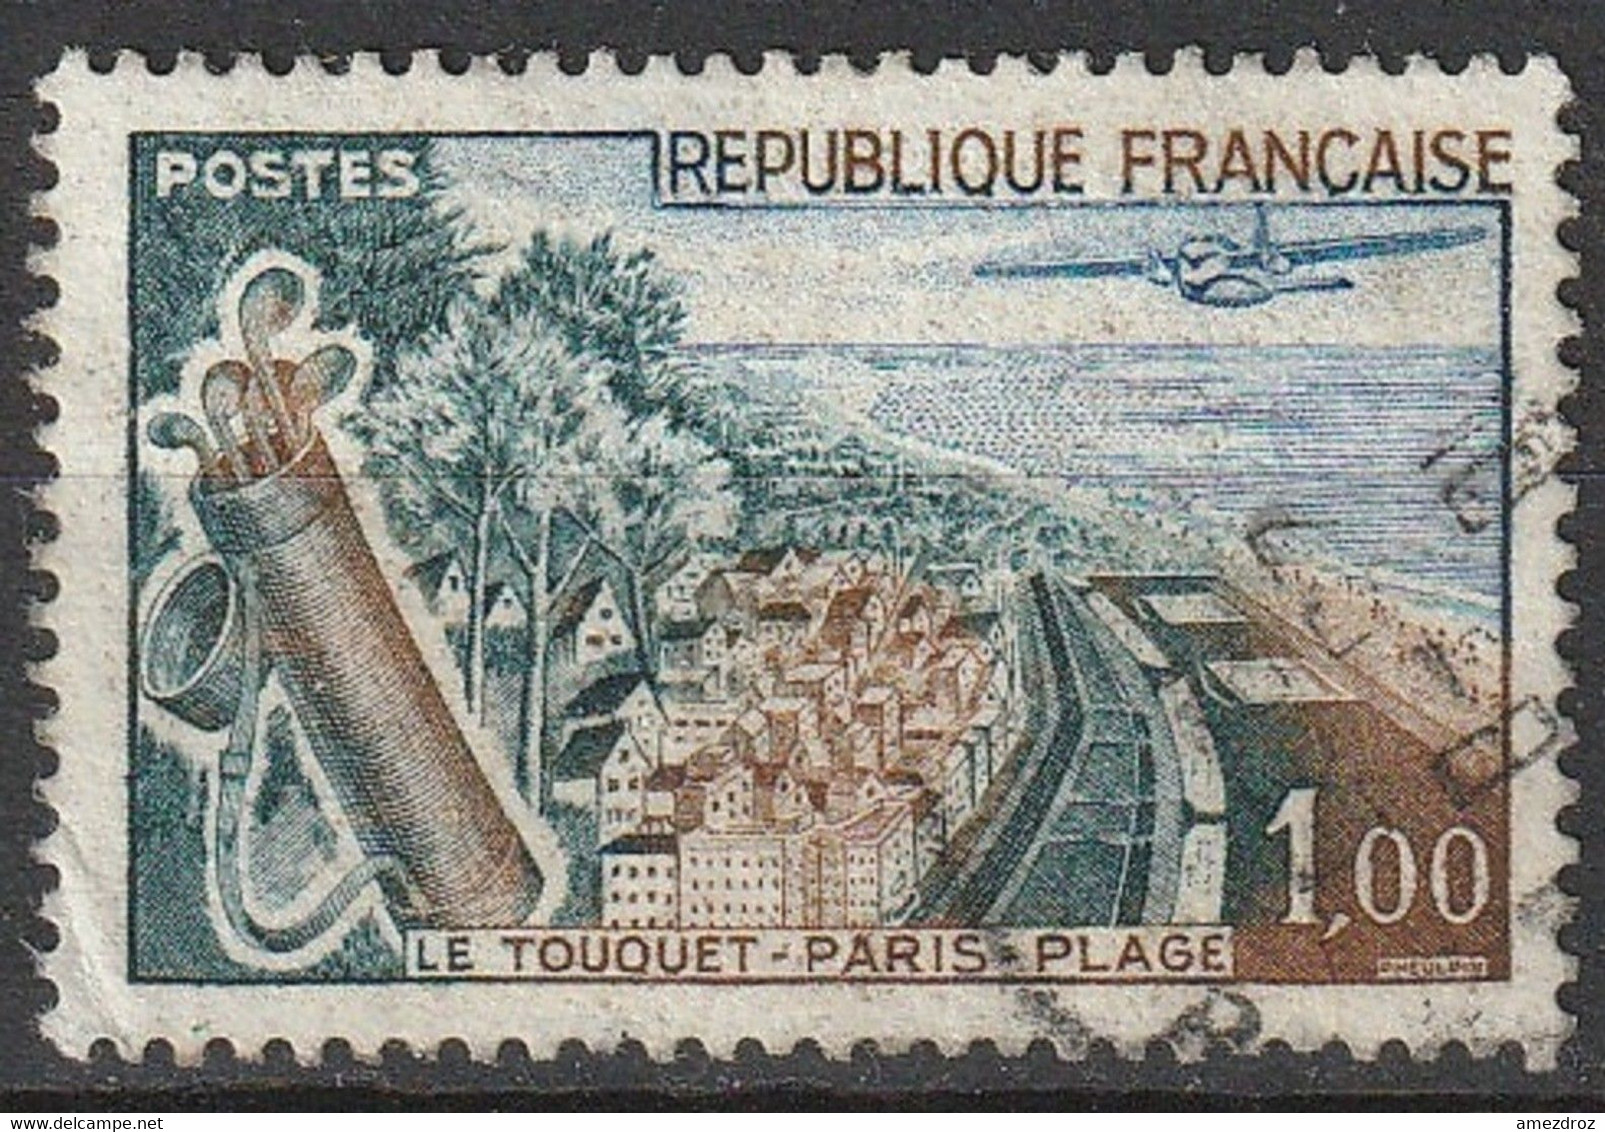 France 1962 N° 1355b Le Touquet Paris Plage, Plage Verte (G10) - Usati